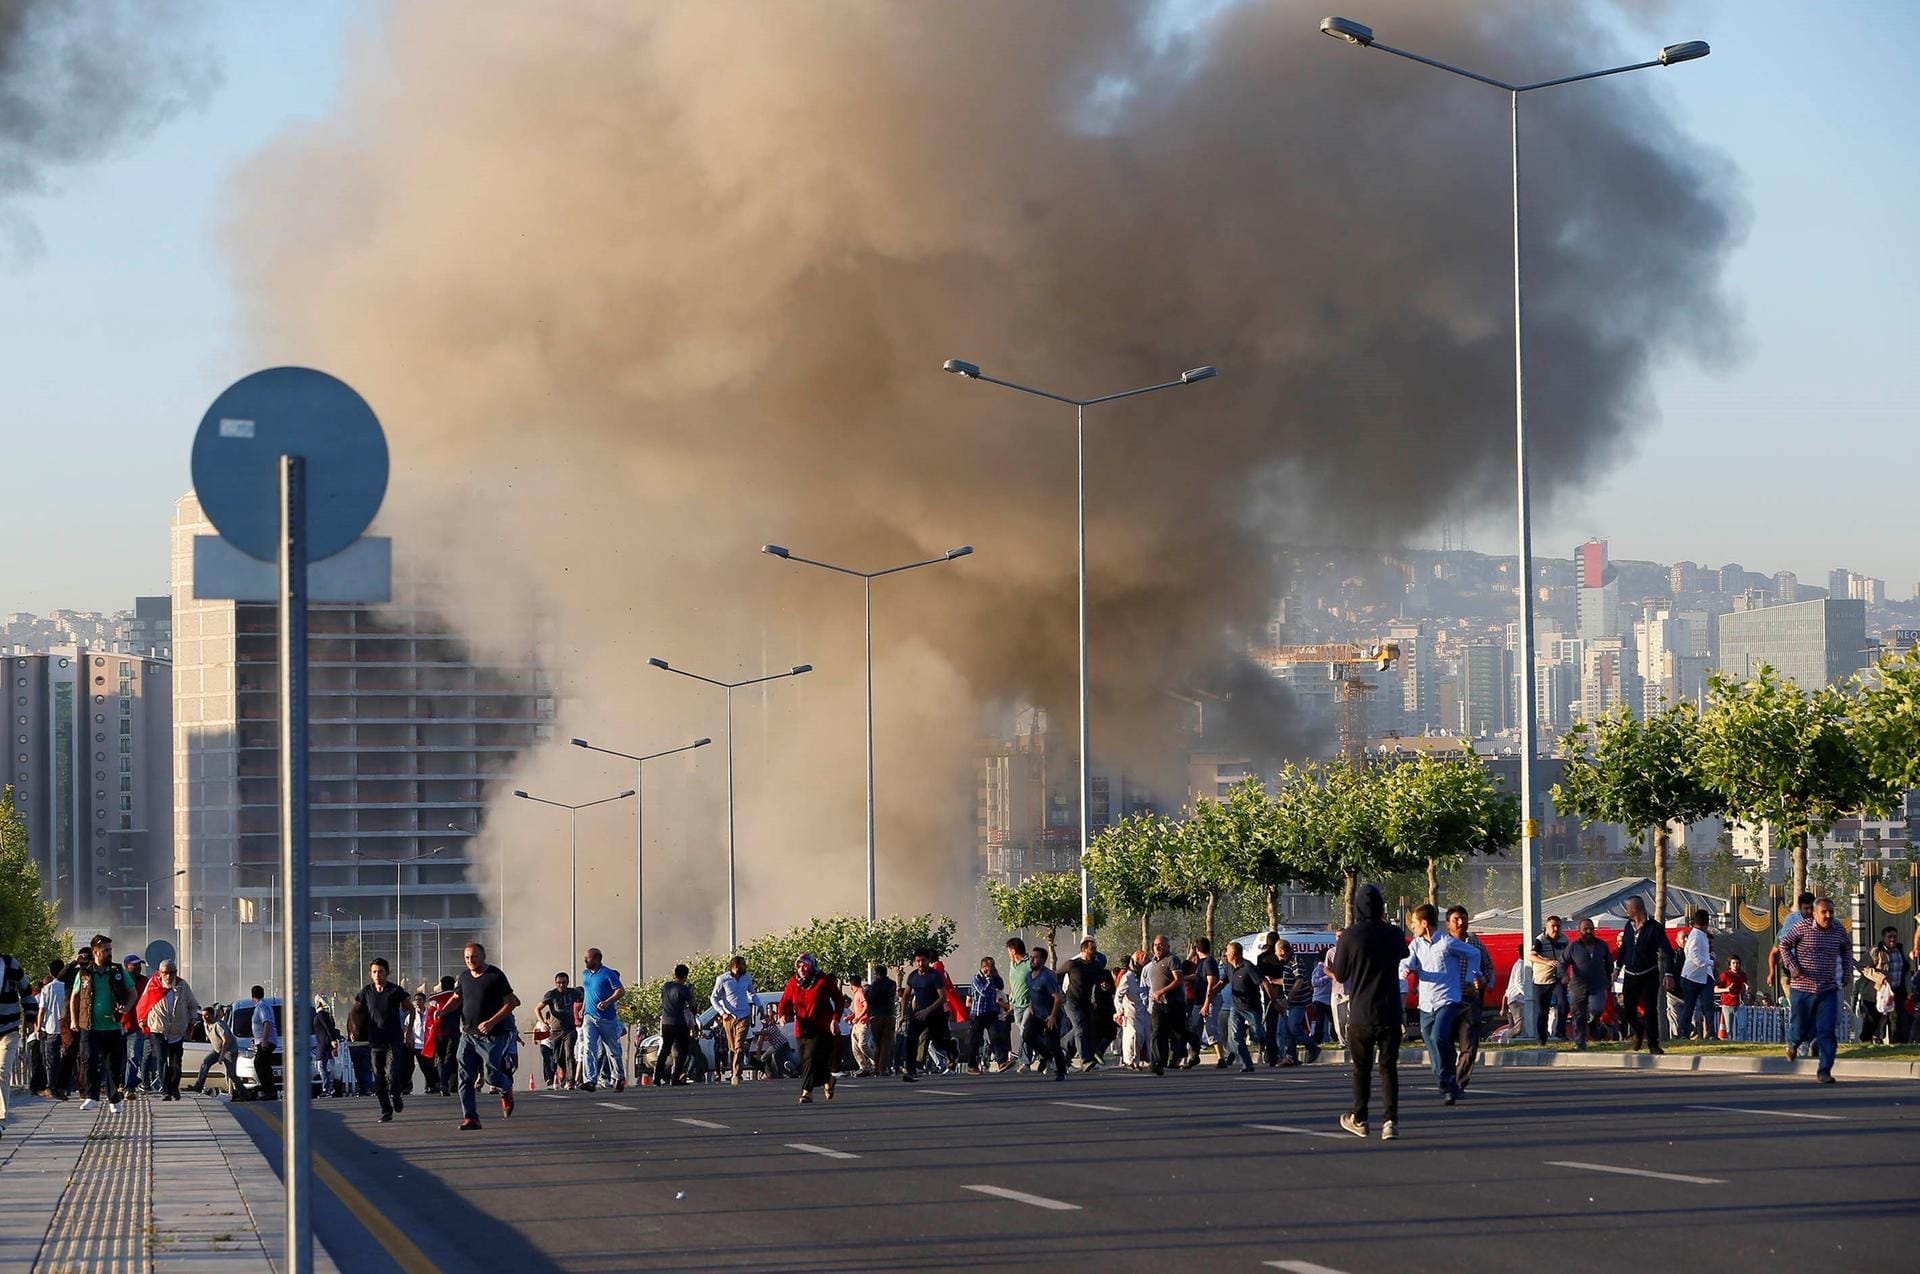 Am Morgen nach dem Putschversuch steigt auch in der Nähe des Präsidentenpalastes in der türkischen Hauptstadt Rauch auf.